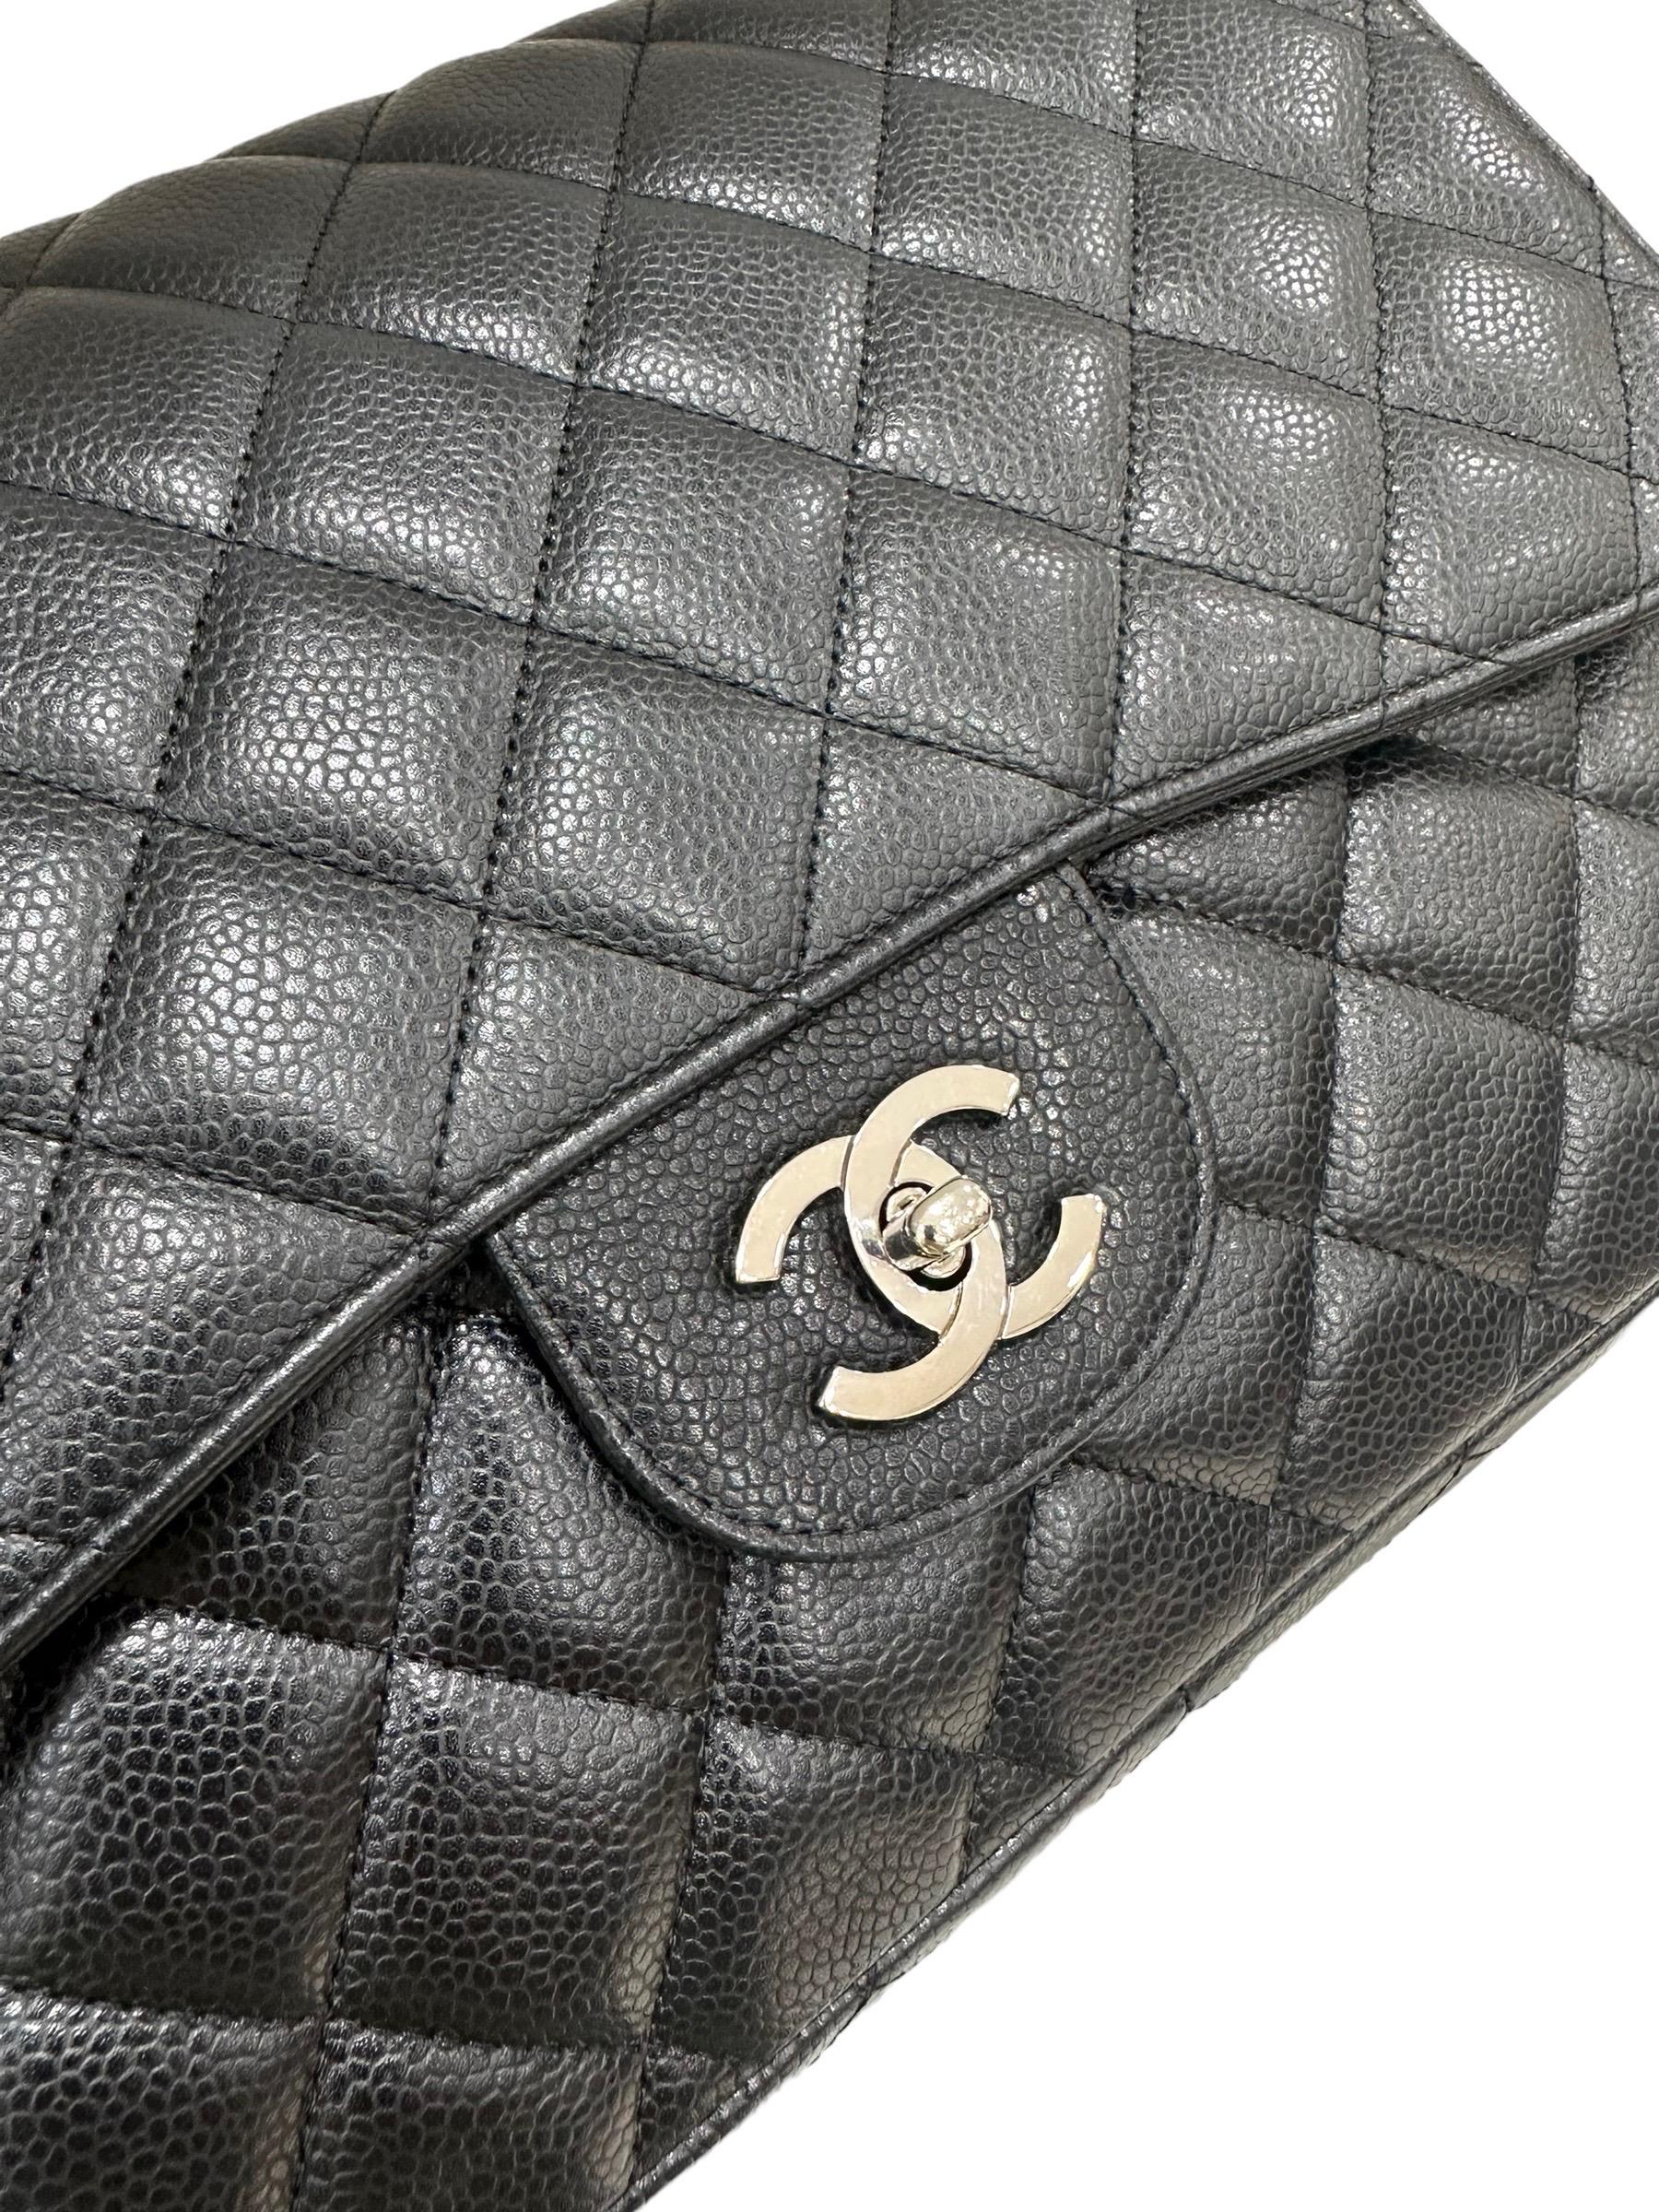 2009 Chanel Jumbo Schwarze Umhängetasche aus Leder in Kaviar  Damen